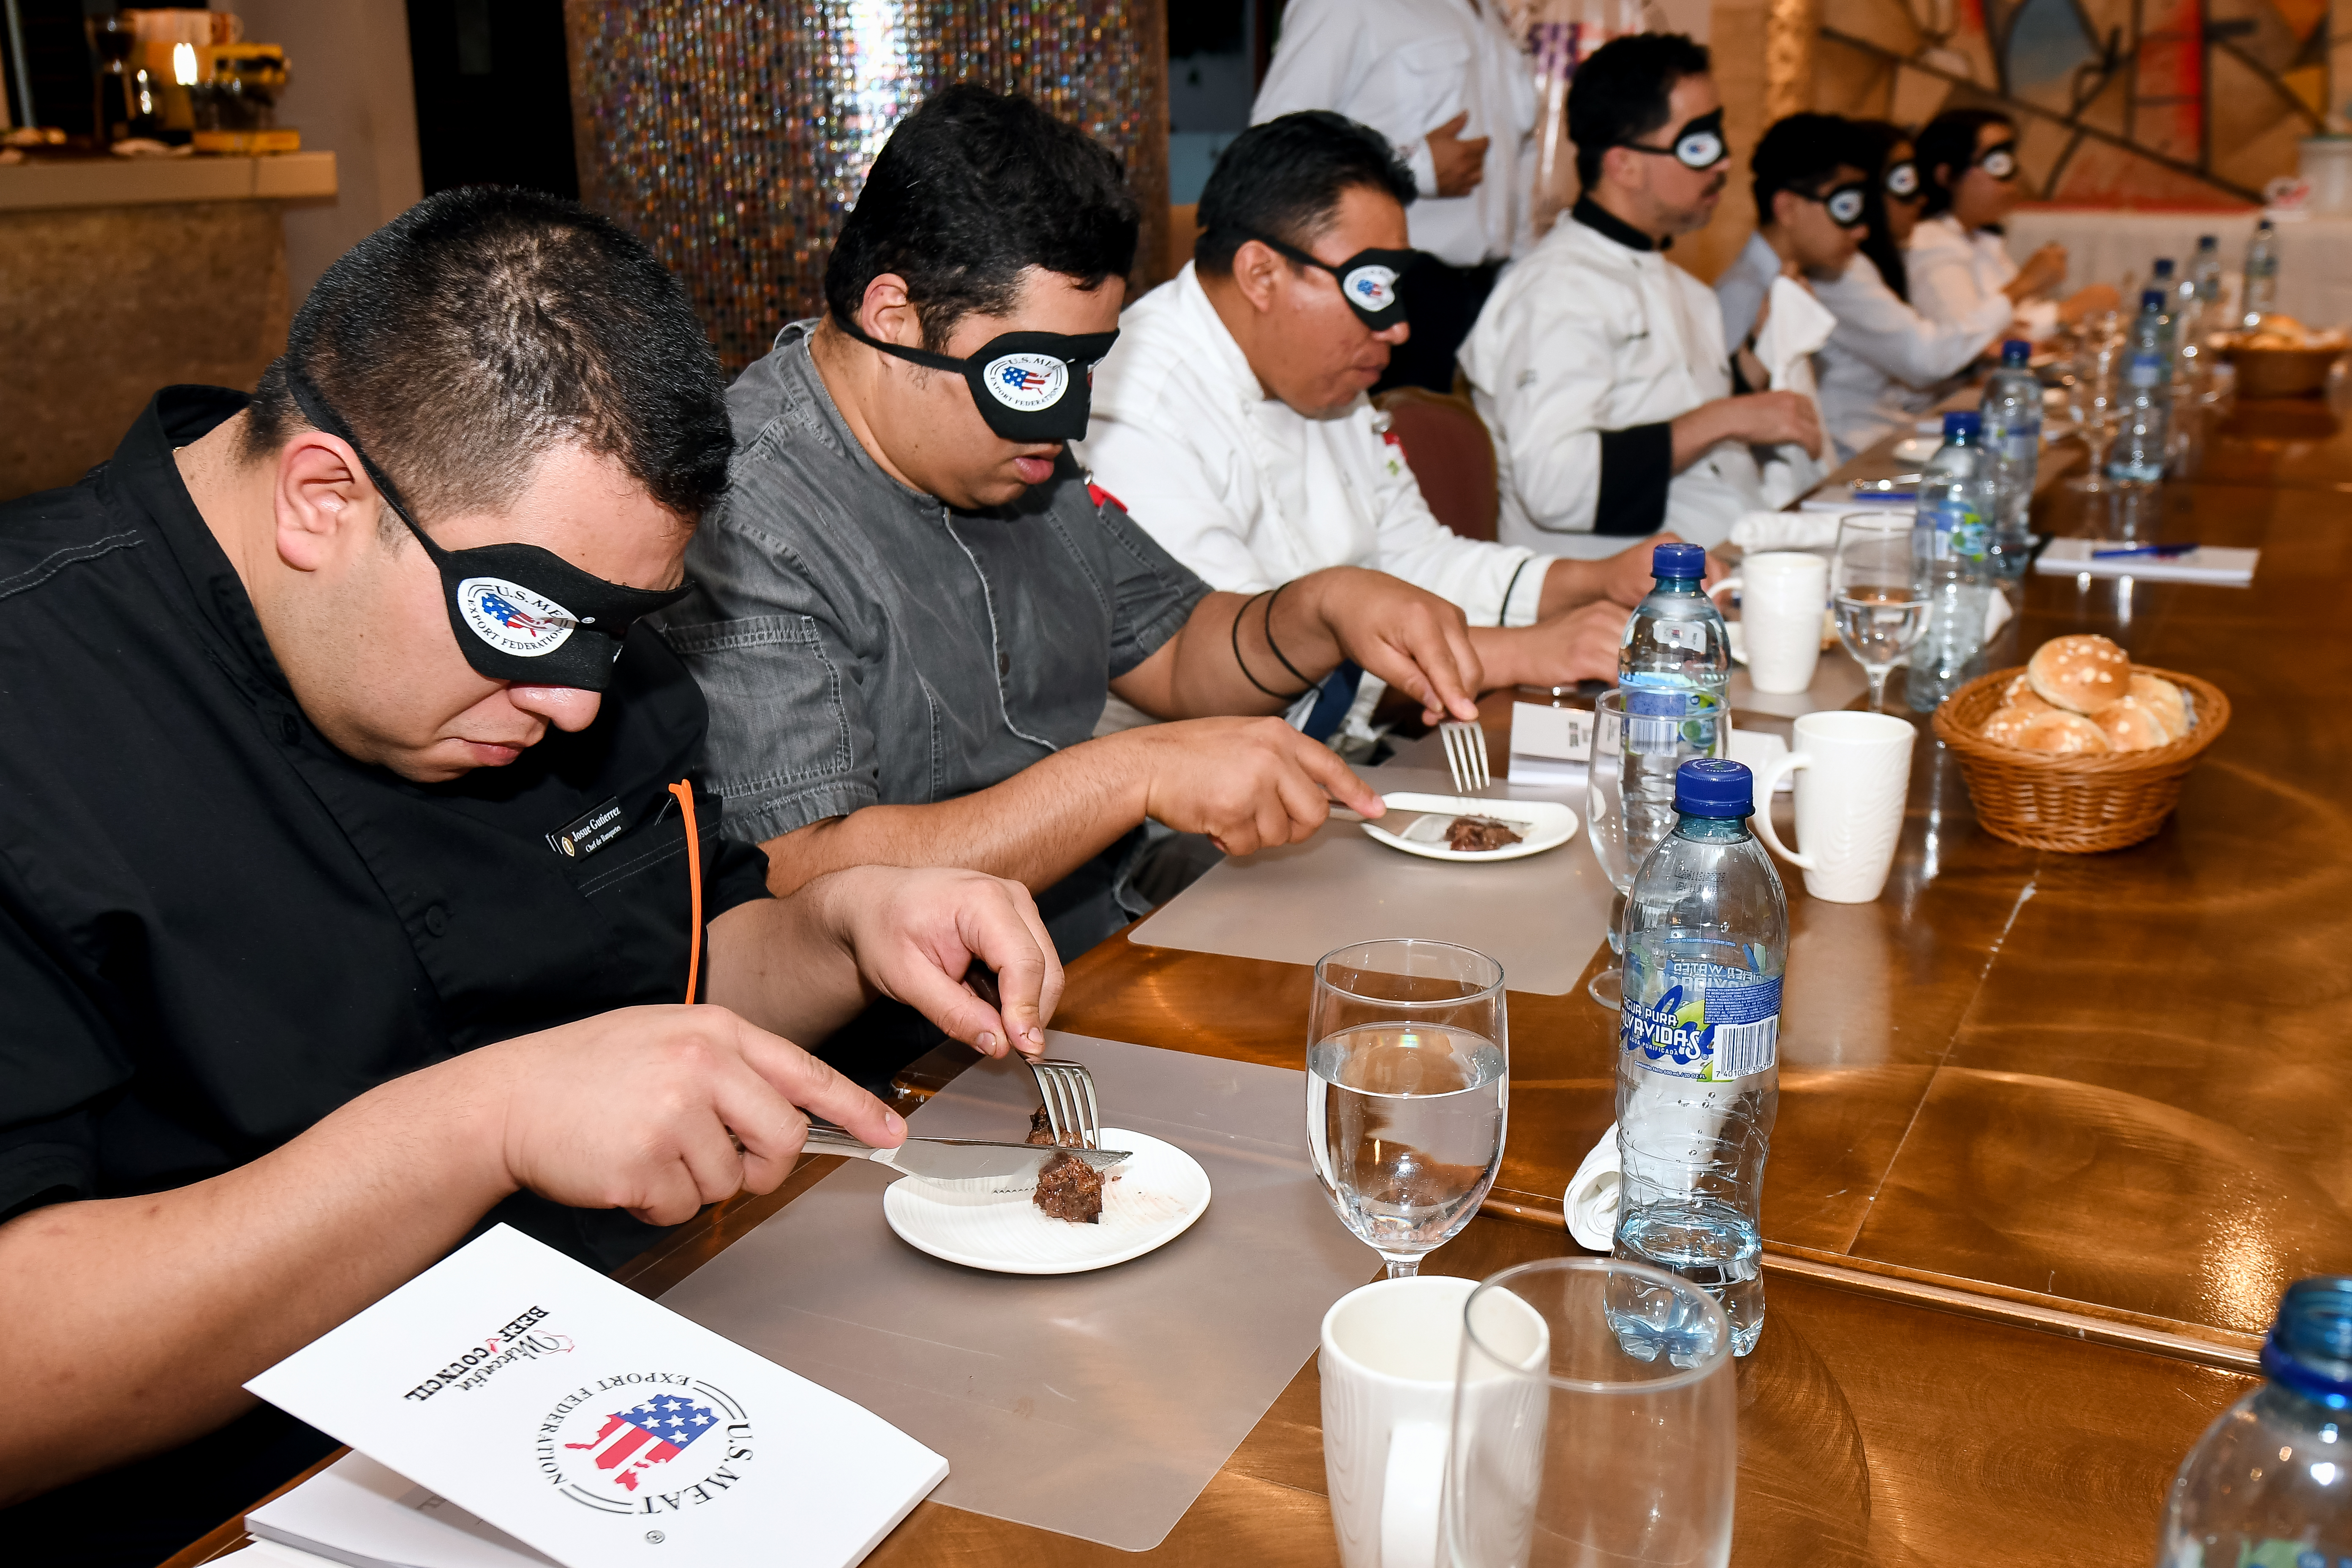 En la experiencia sensorial participaron chefs, influencer y empresarios restauranteros. Foto Prensa Libre: Sergio Muñoz